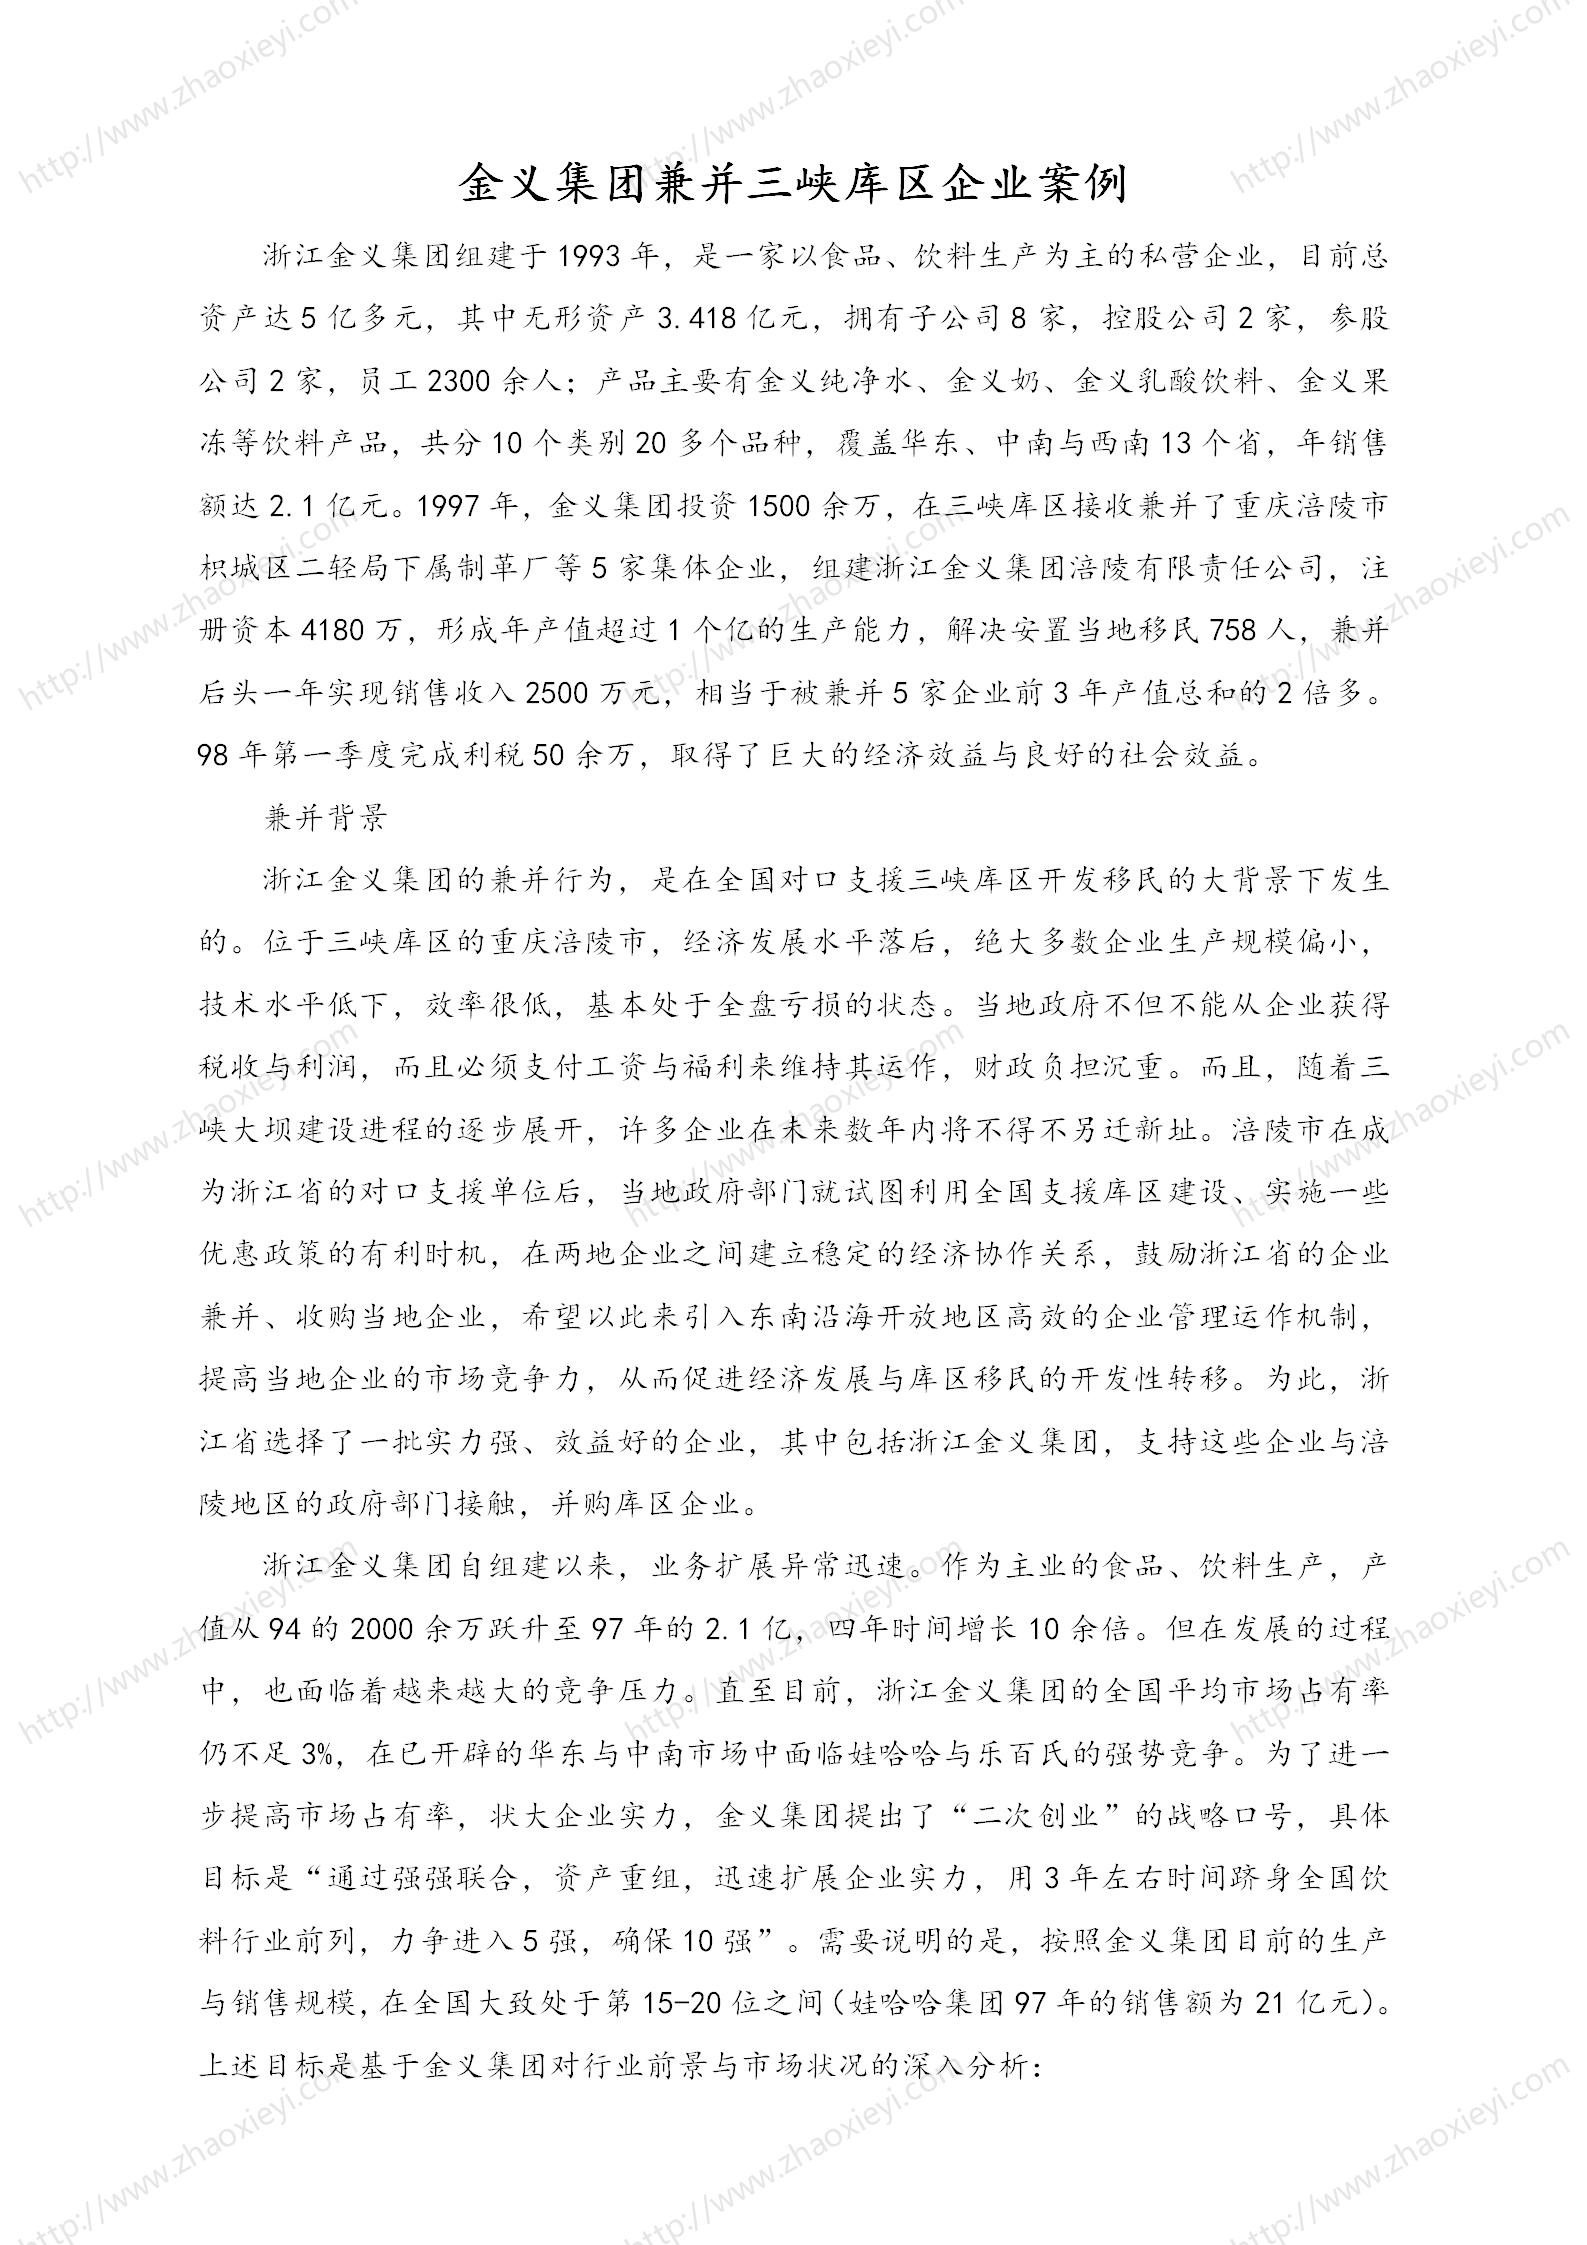 中国企业并购经典案例_123.jpg